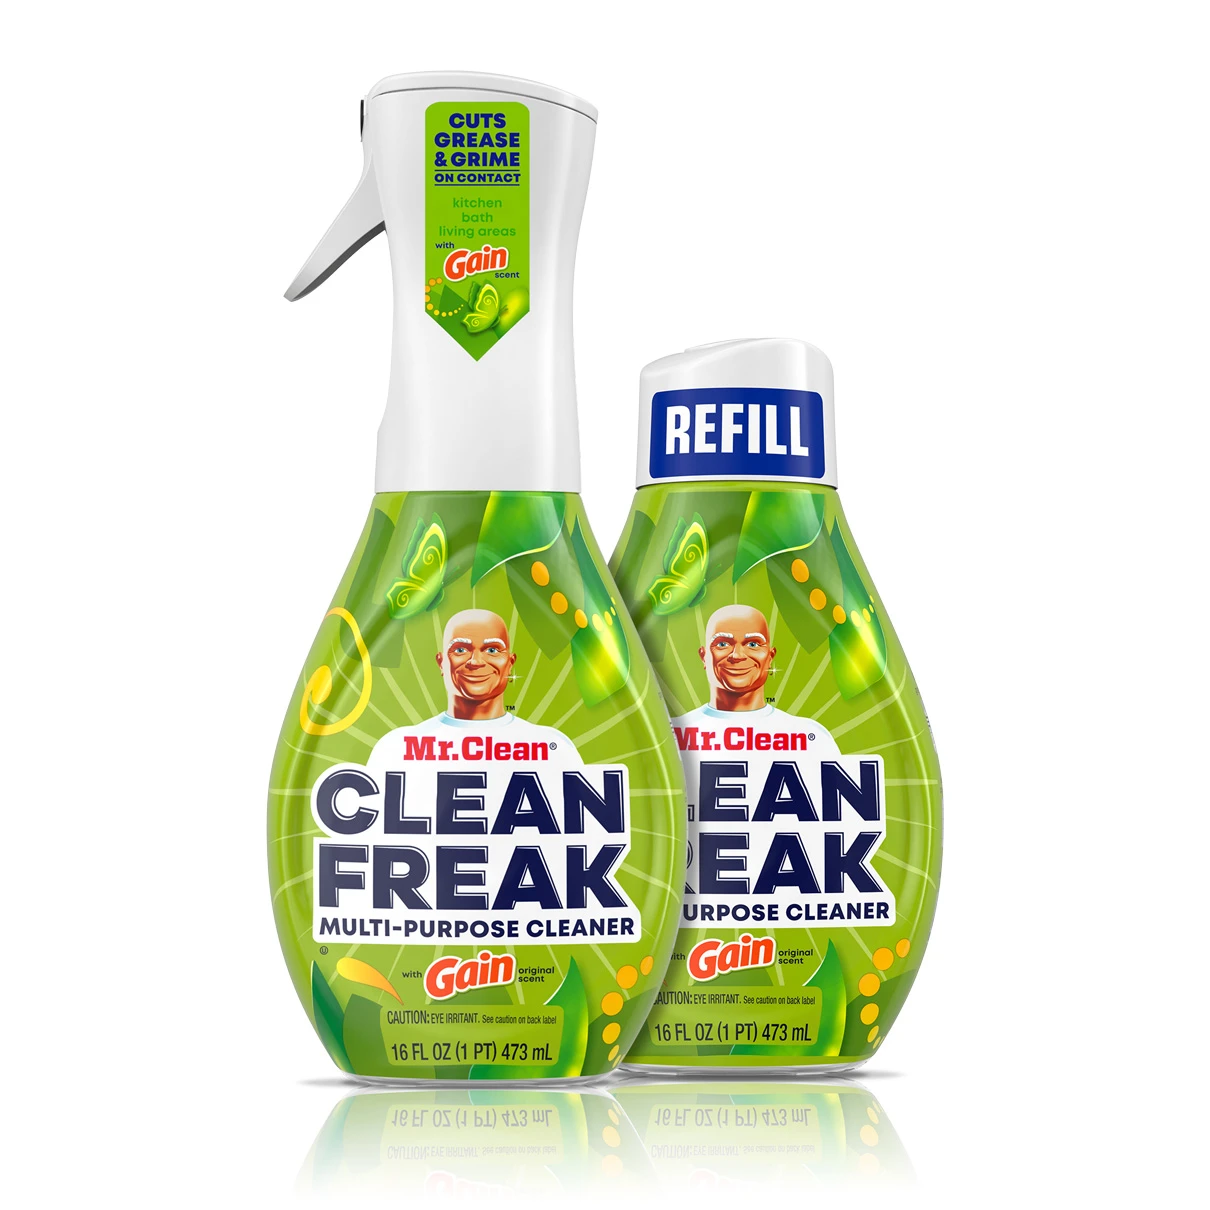 Clean-Freak-Gain-1210x1210